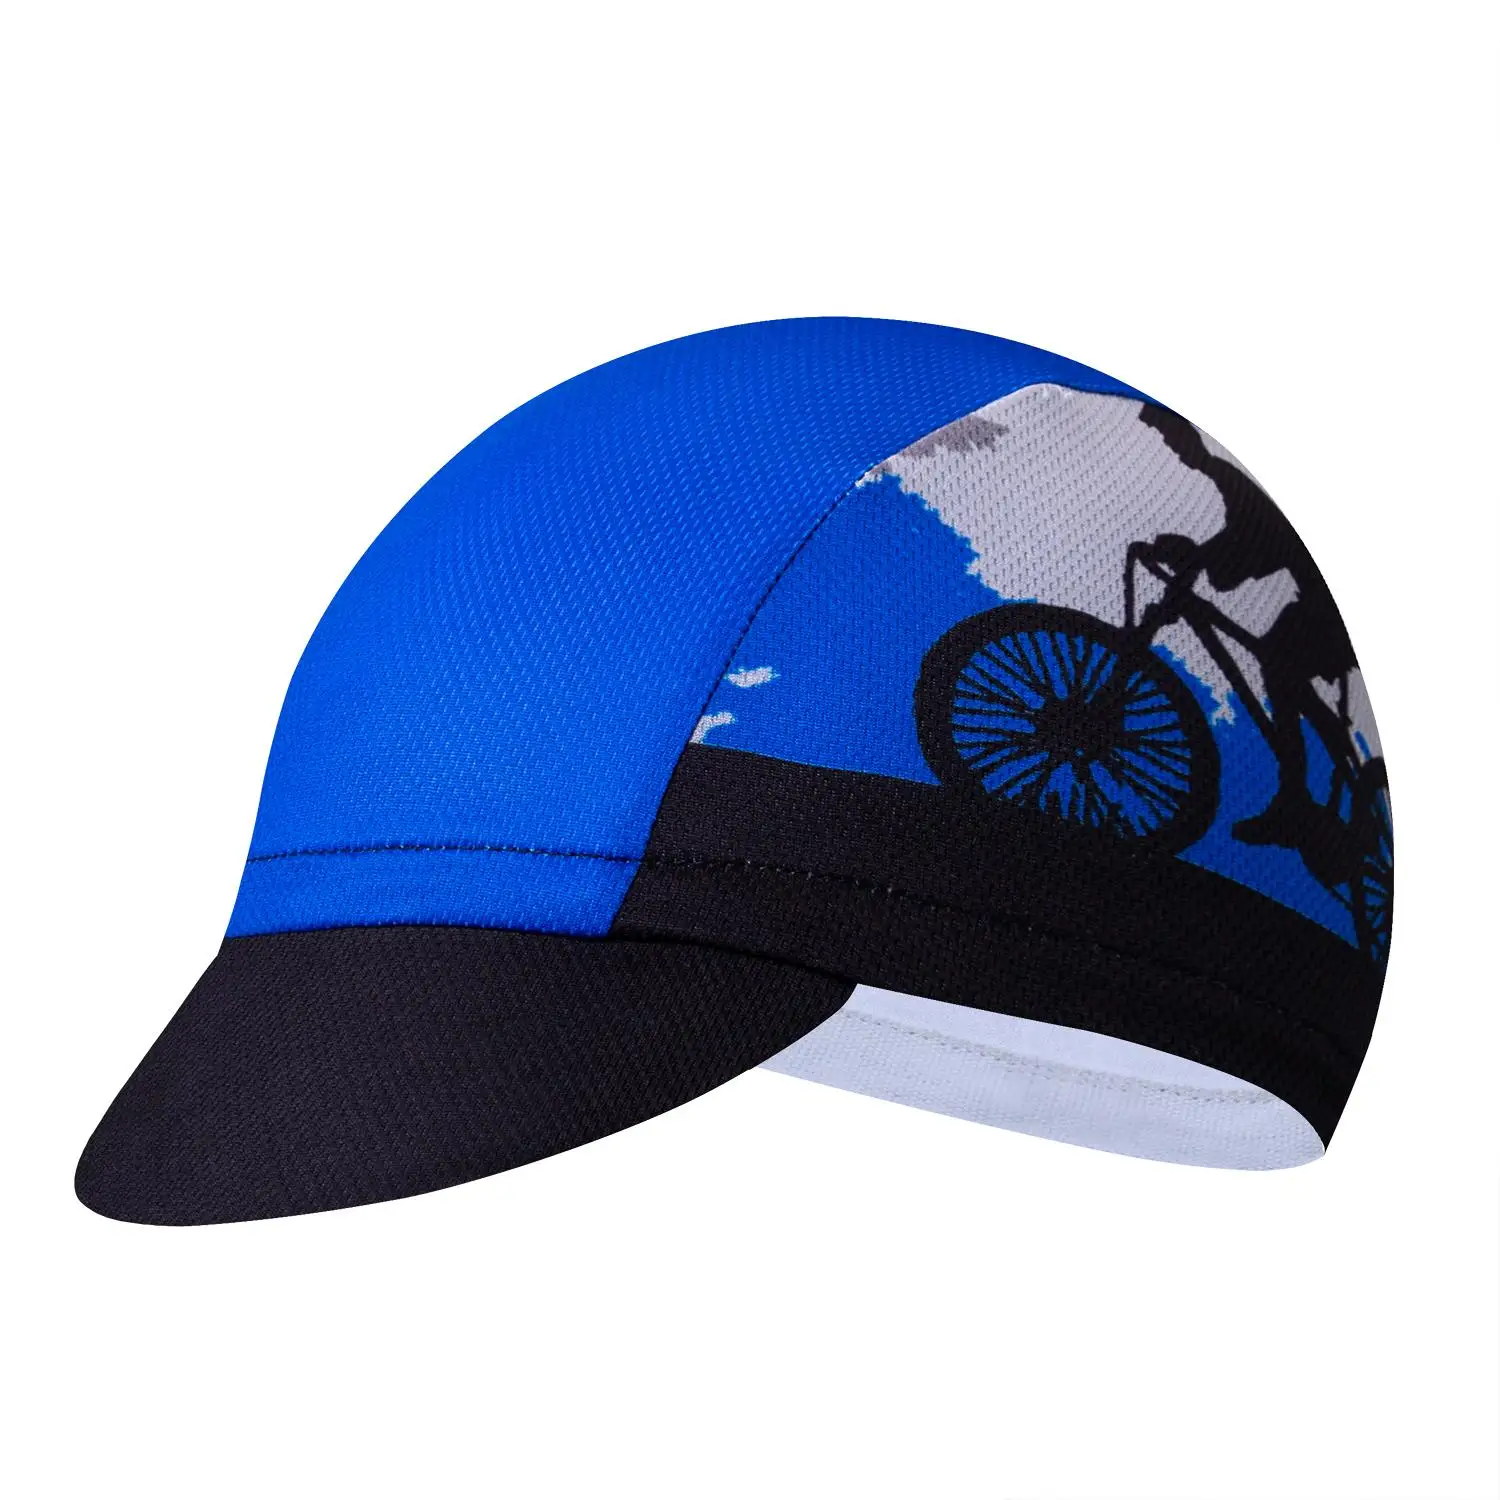 Новая команда Pro Велоспорт шапки головные уборы дорога горный велосипед Race пират повязка внутри шлем для мужчин женщин пиратская шляпа - Цвет: CD2433